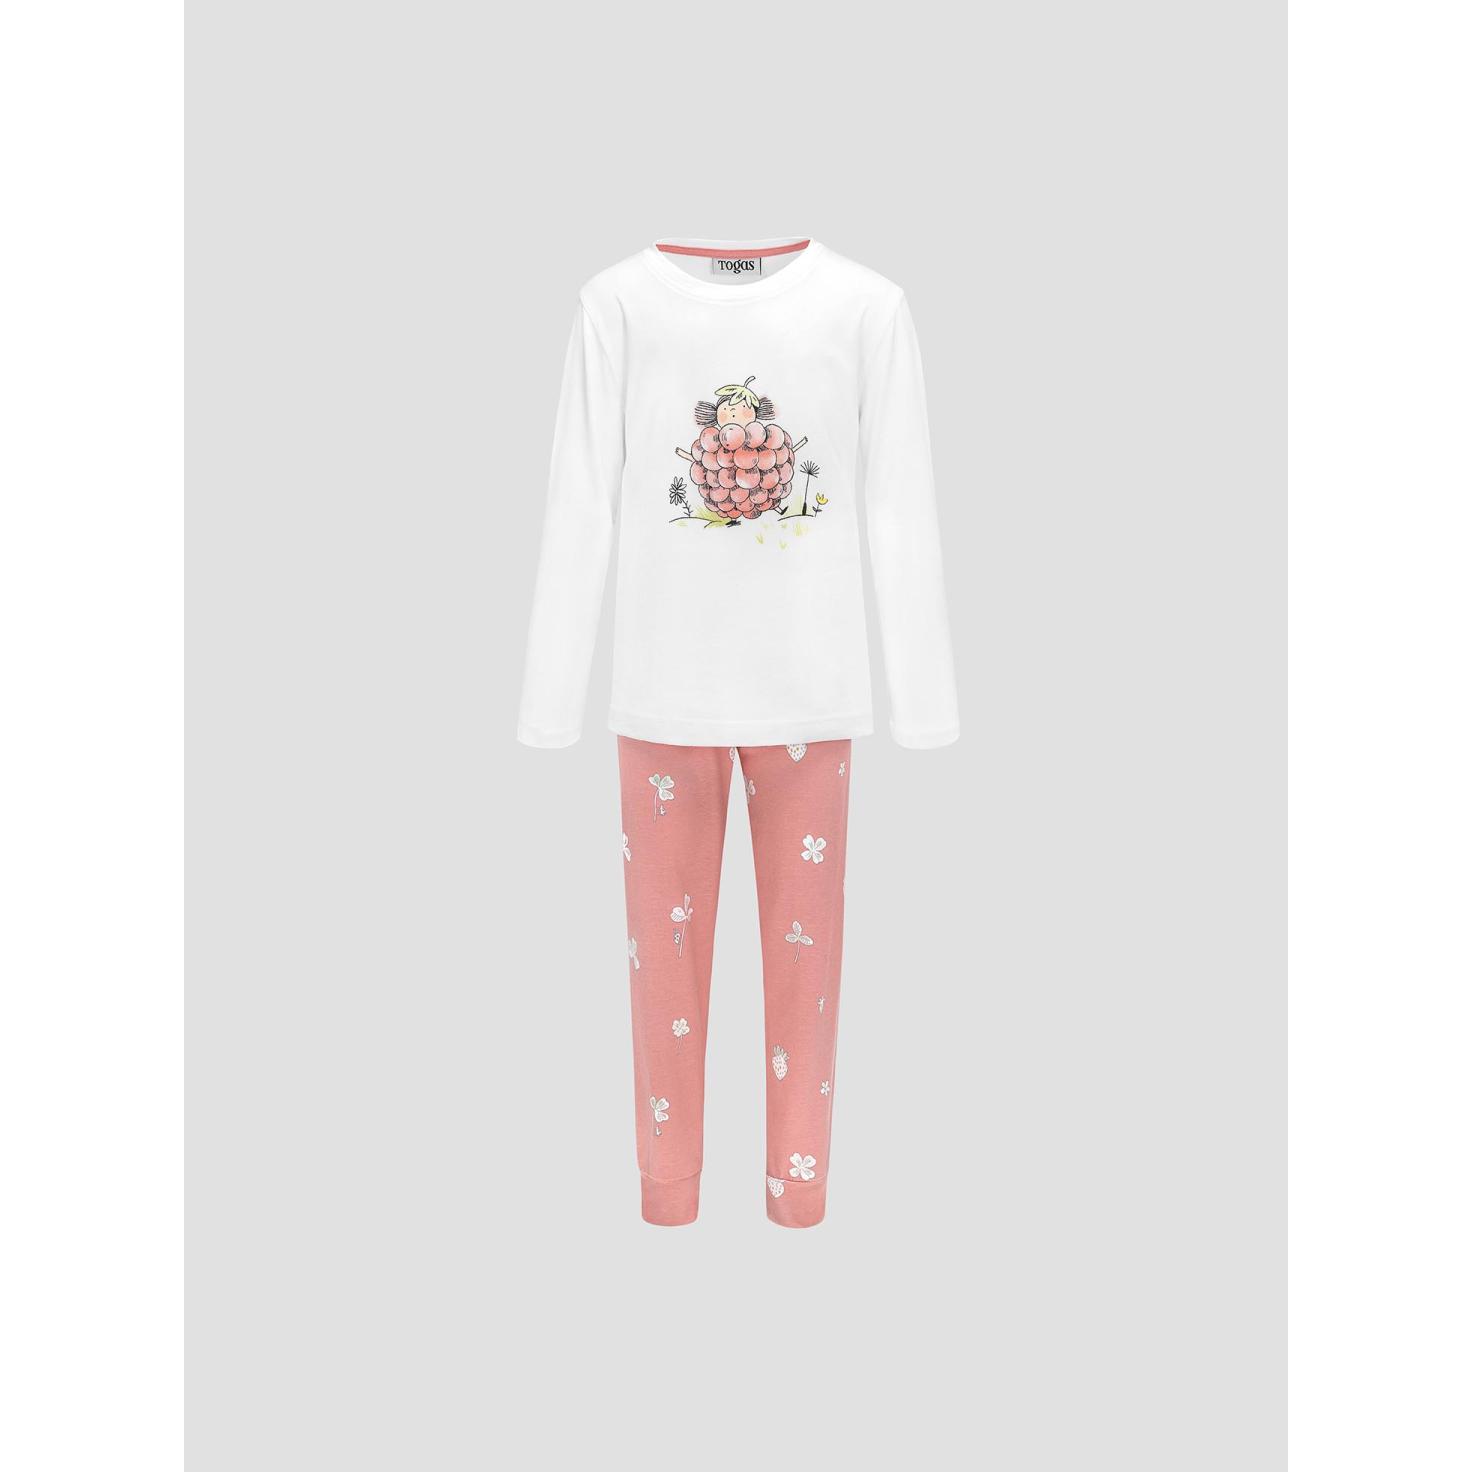 Пижама для девочек Kids by togas Стробби бело-розовый 104-110 см пижама togas эсме бело сиреневая женская